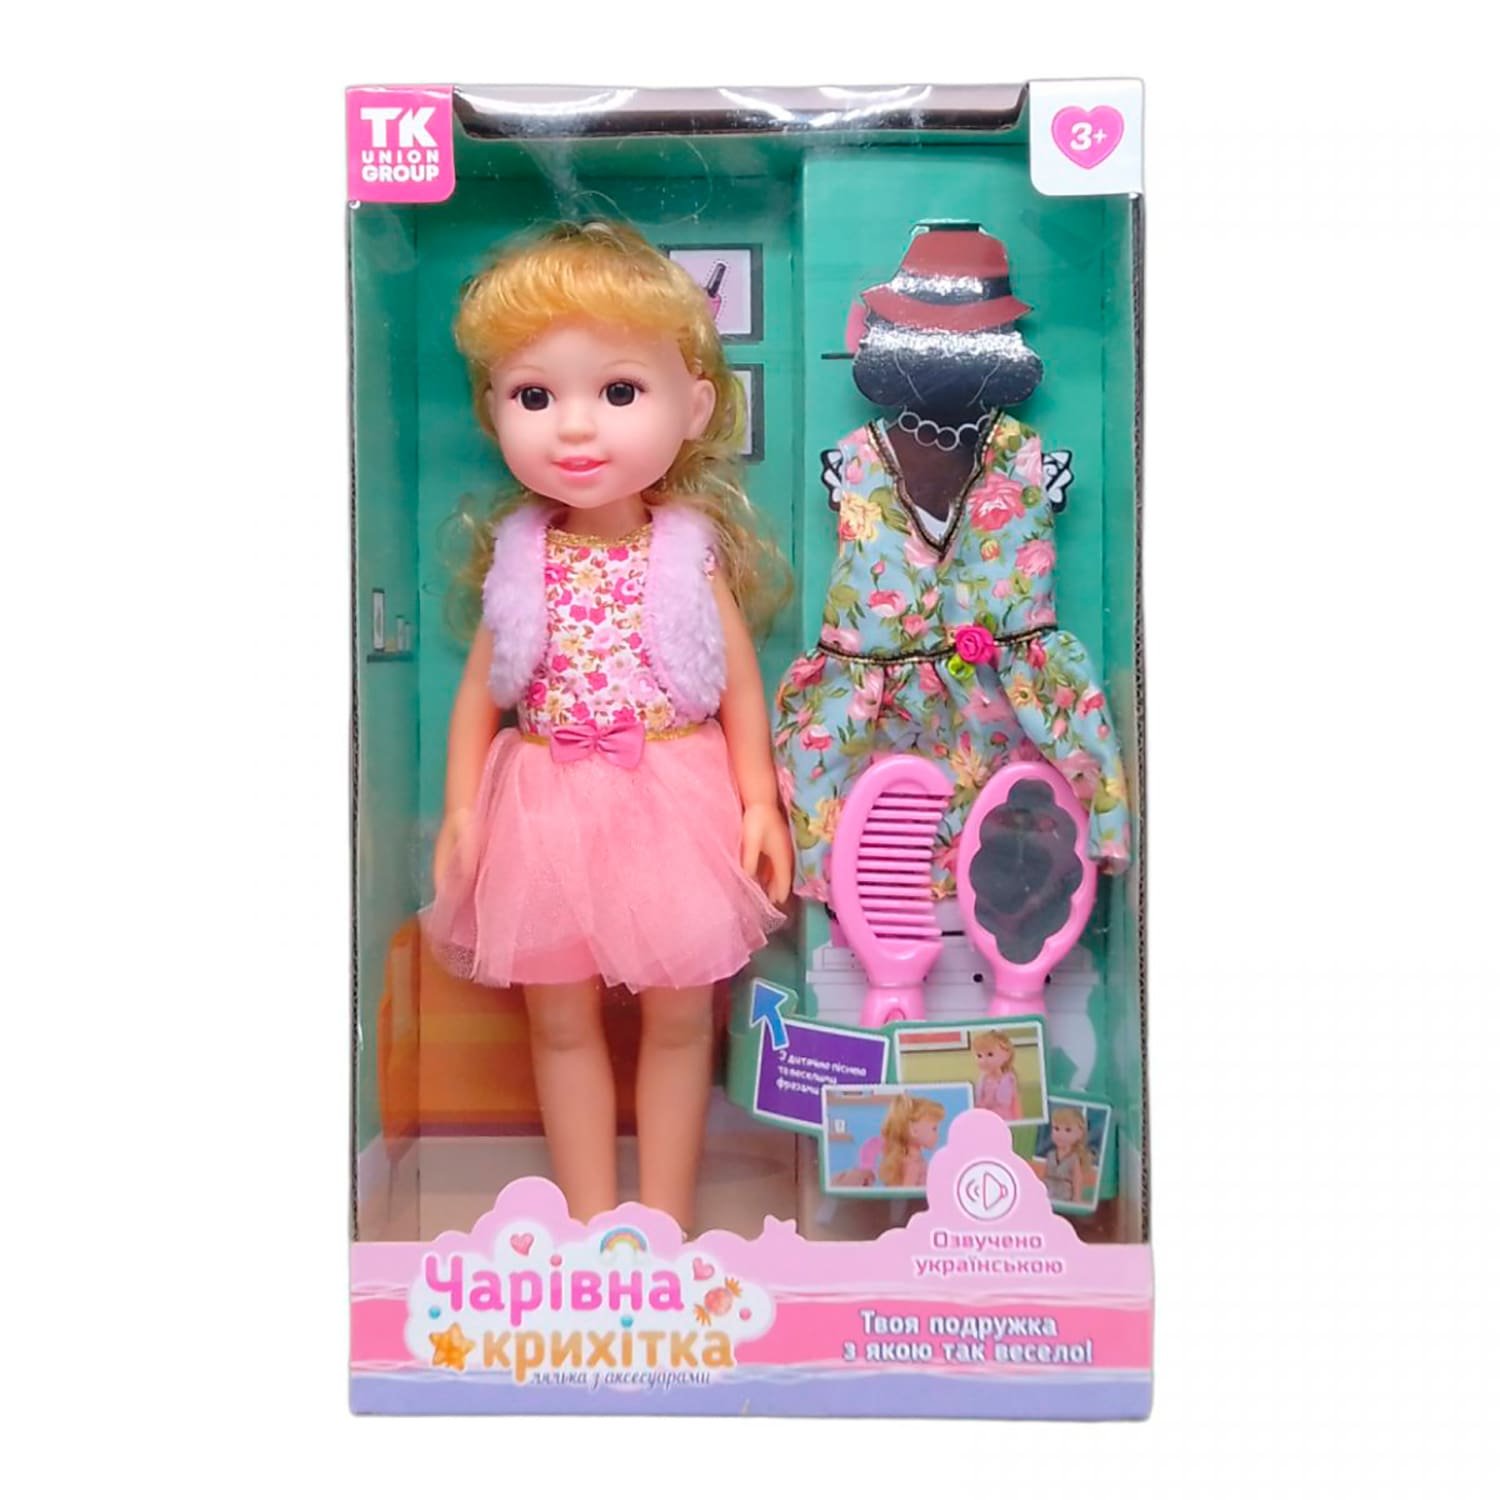 Лялька функціональна розмовляє та співає українською мовою (TK - 03595-1) висота 31 см, в коробці